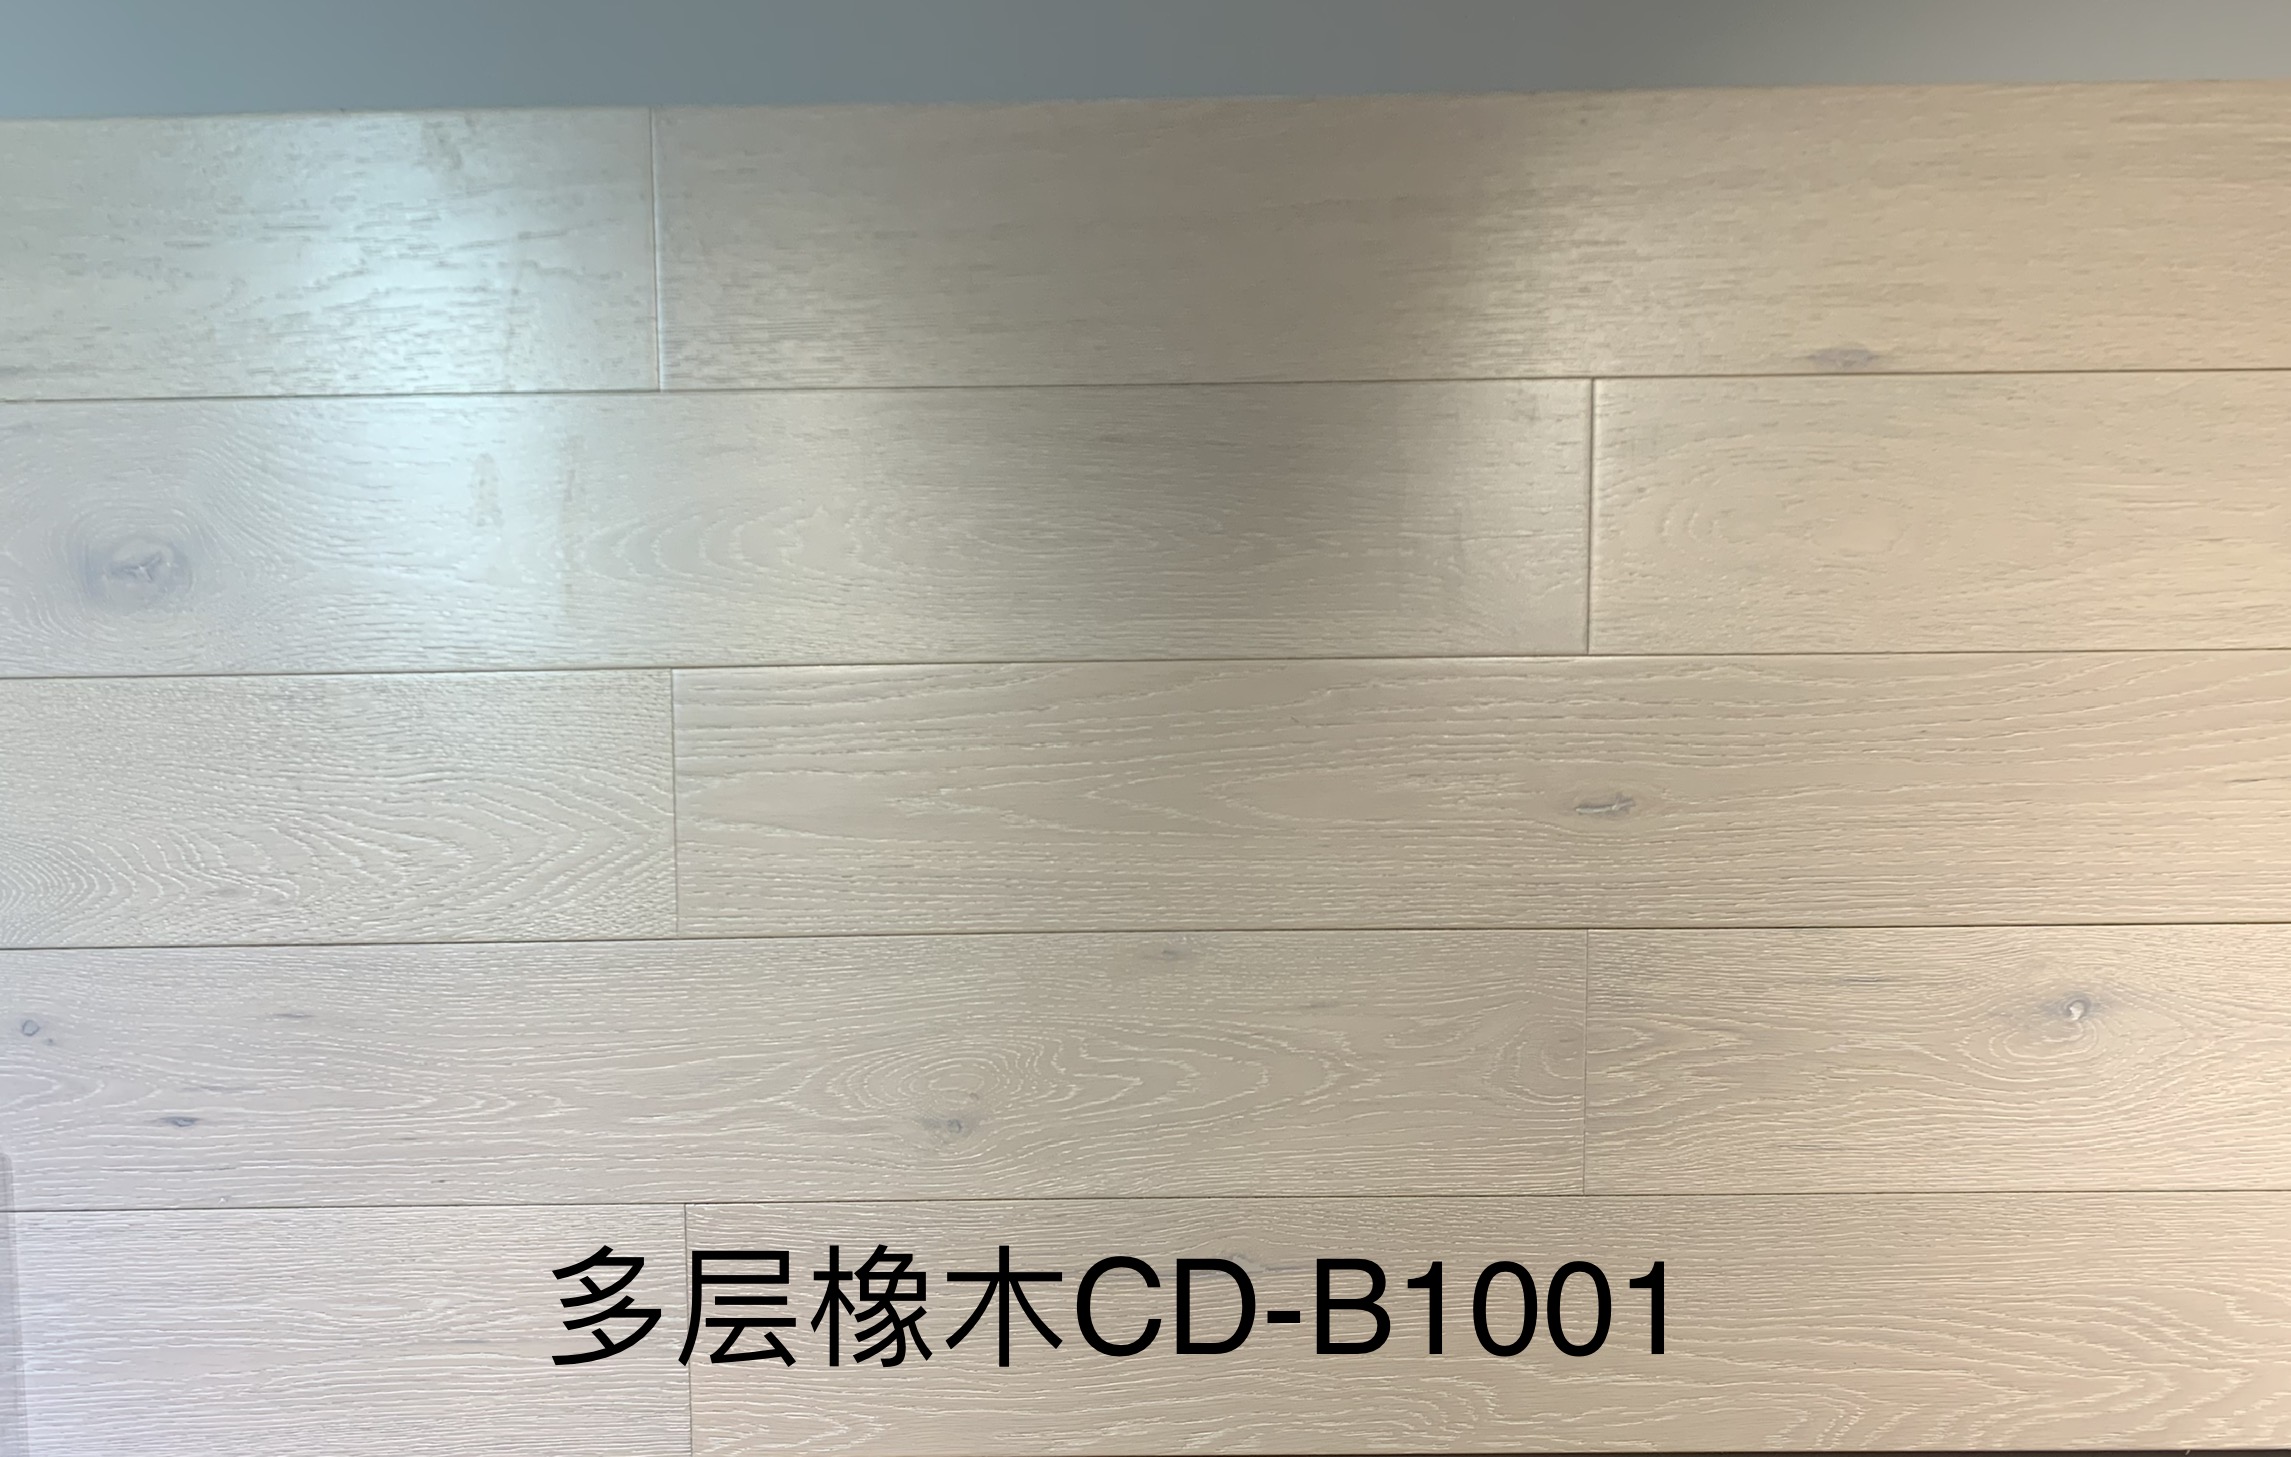 栎木多层CD-B1001